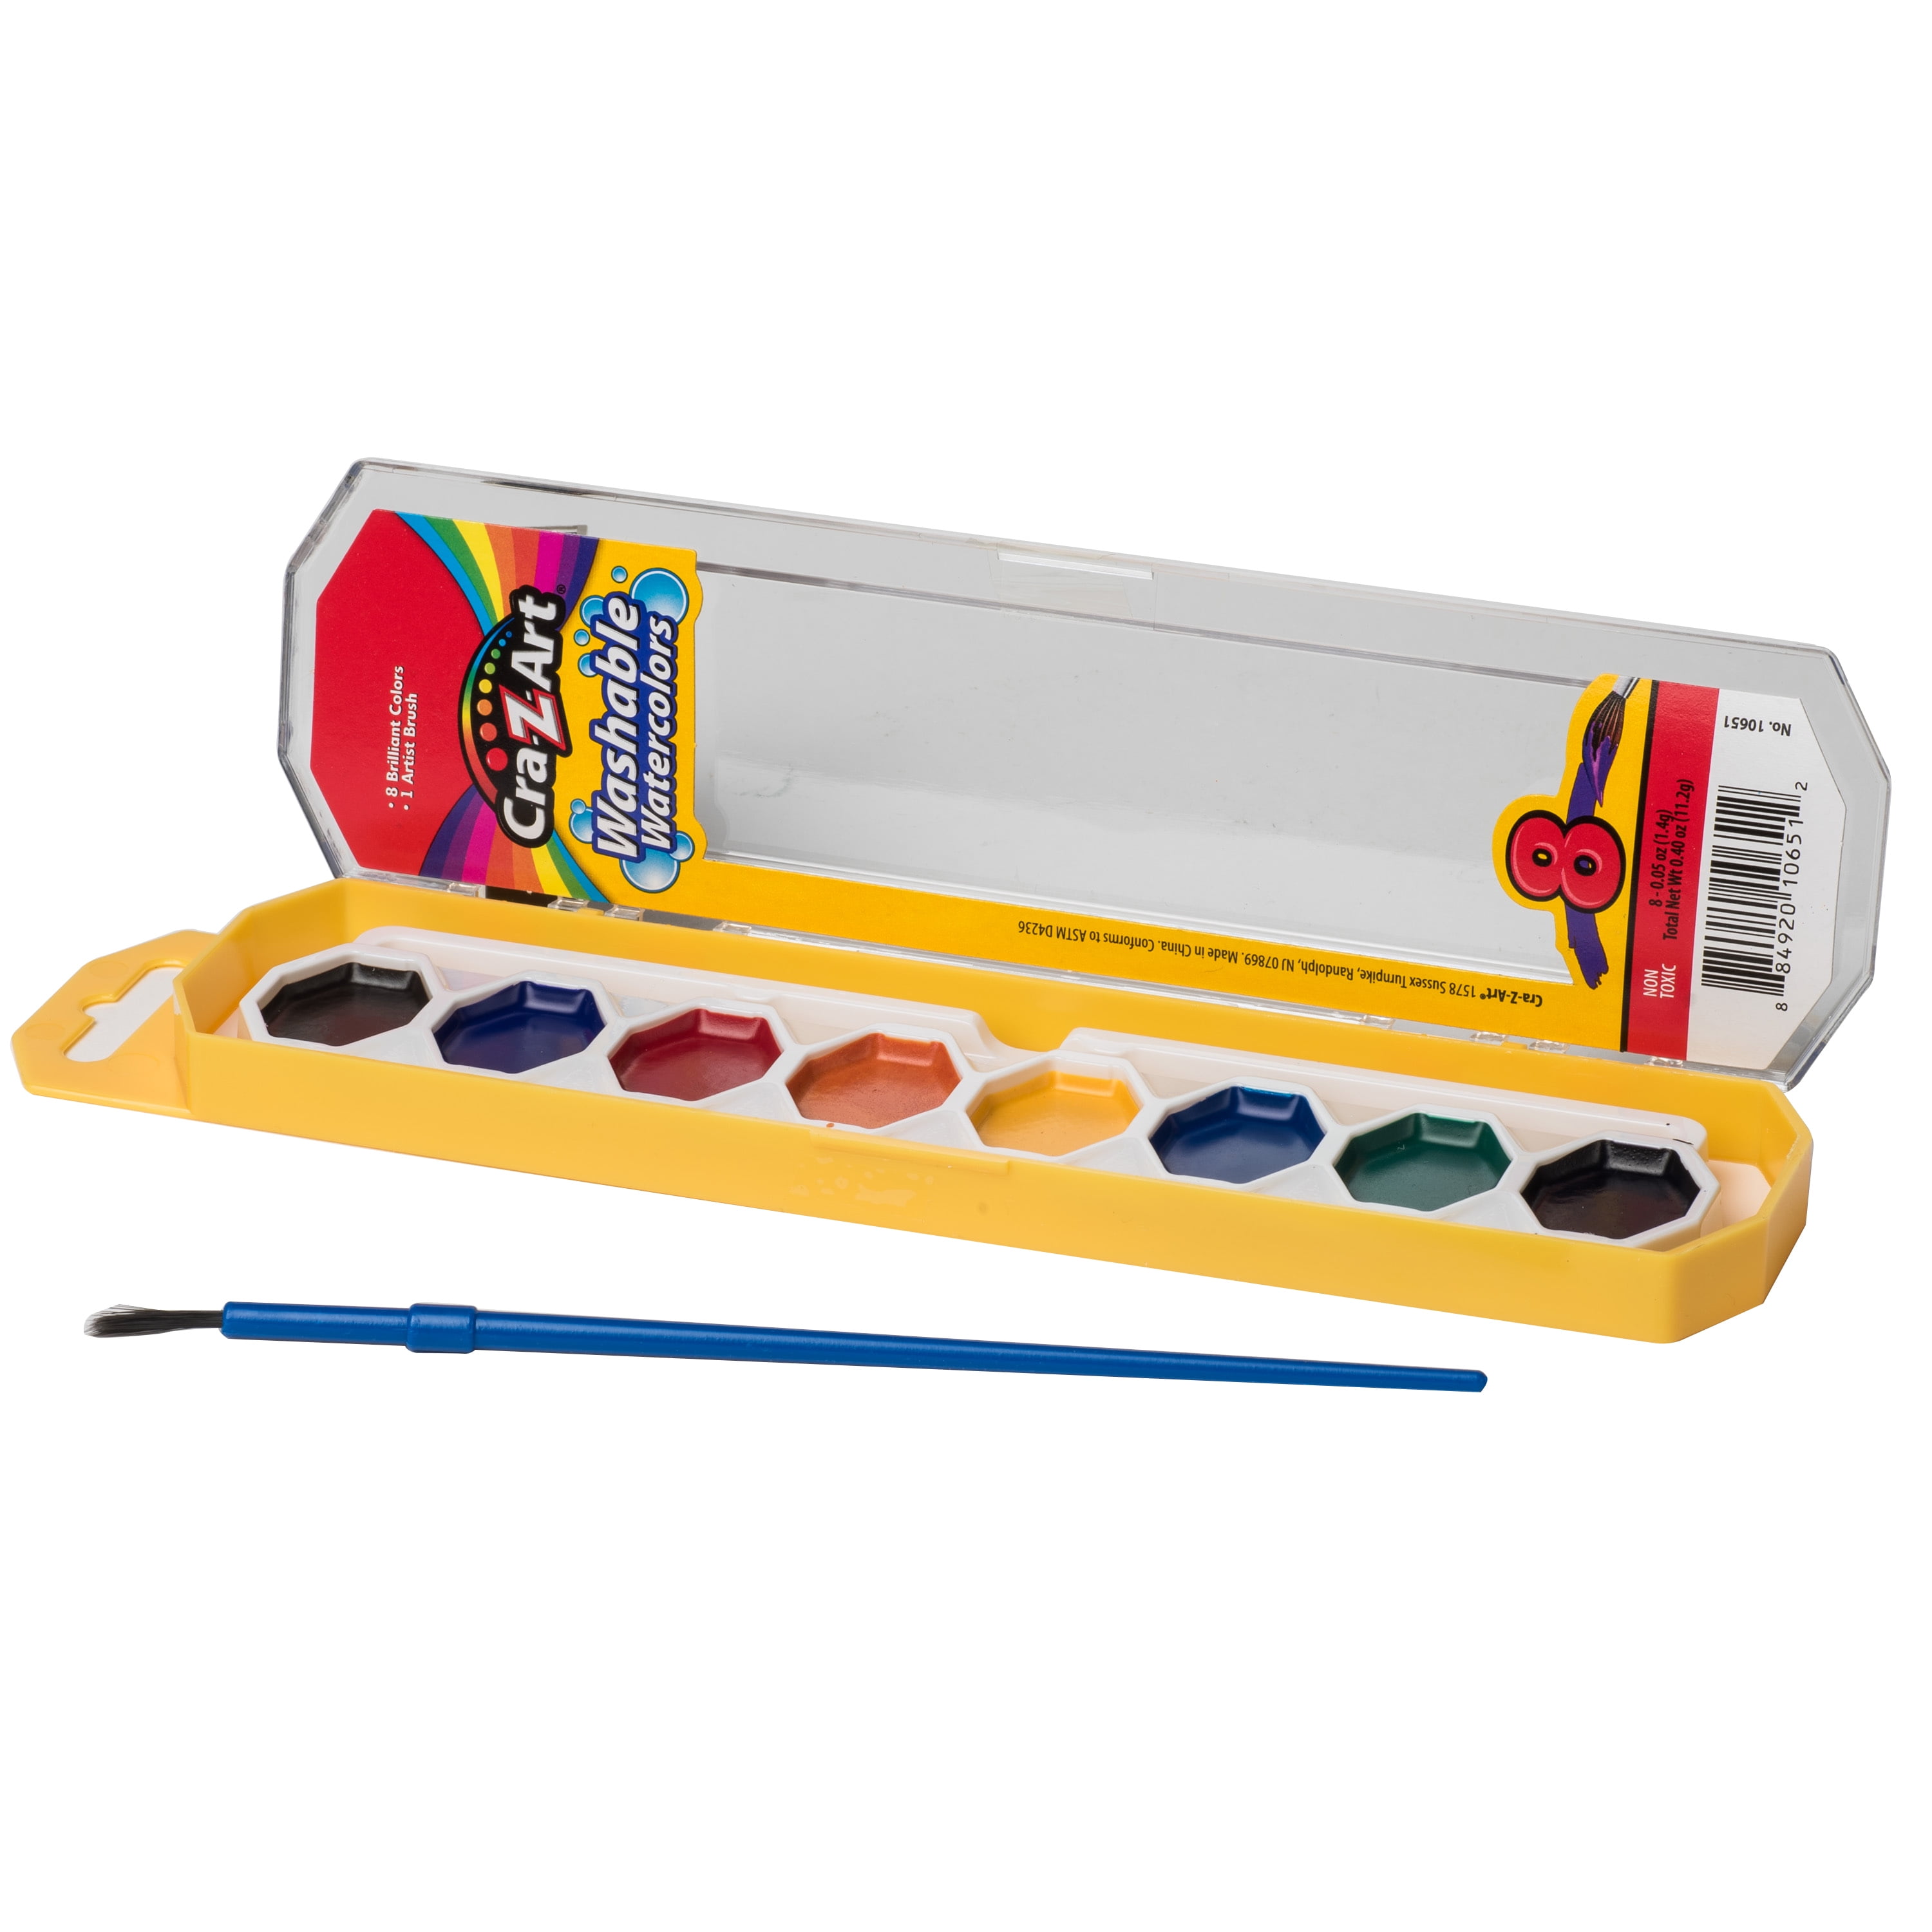 Cra-Z-Art Kids' Paint, Washable - 12 paints, 2.15 fl oz